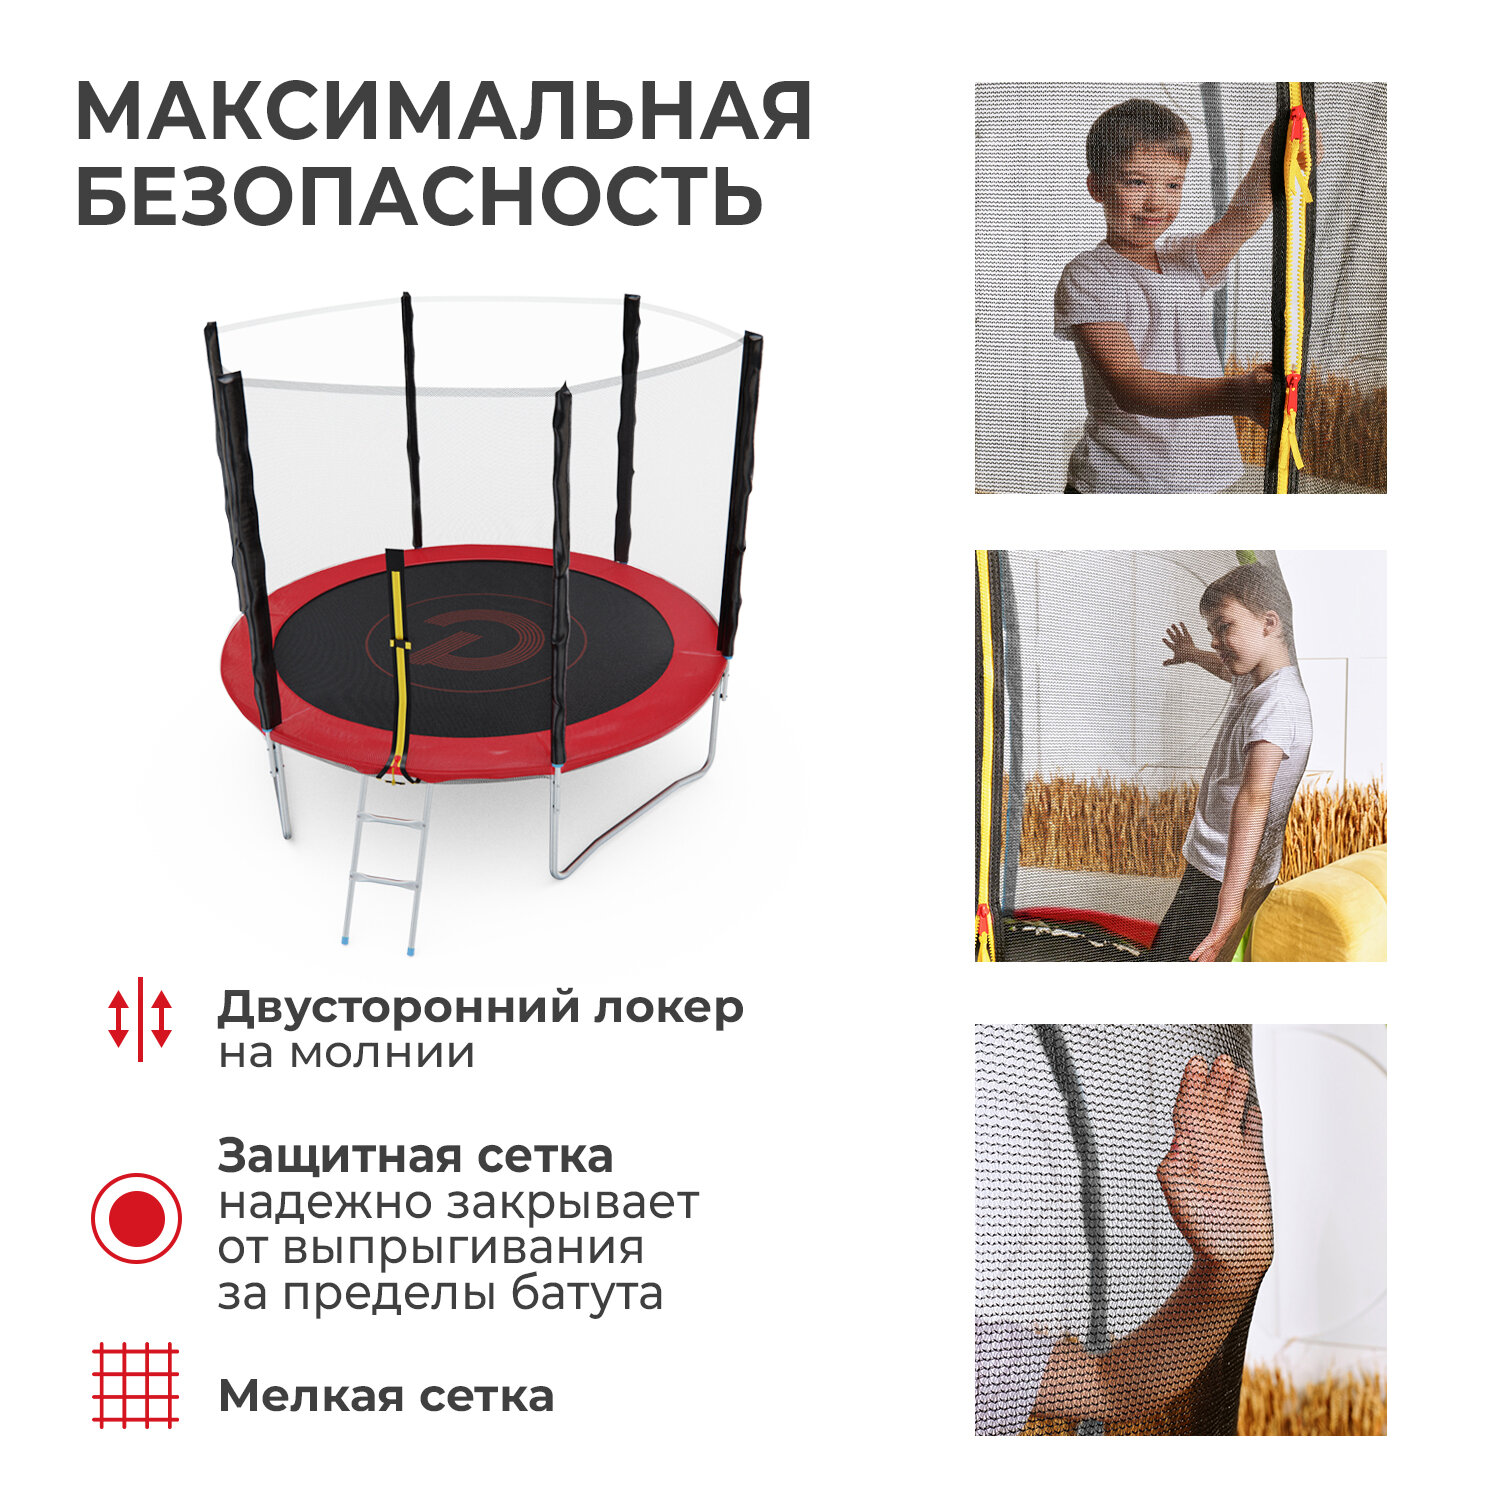 Детский каркасный батут DFC Pelpo 8 футов с лестницей и защитной сеткой, красный, 244 см, нагрузка 100 кг